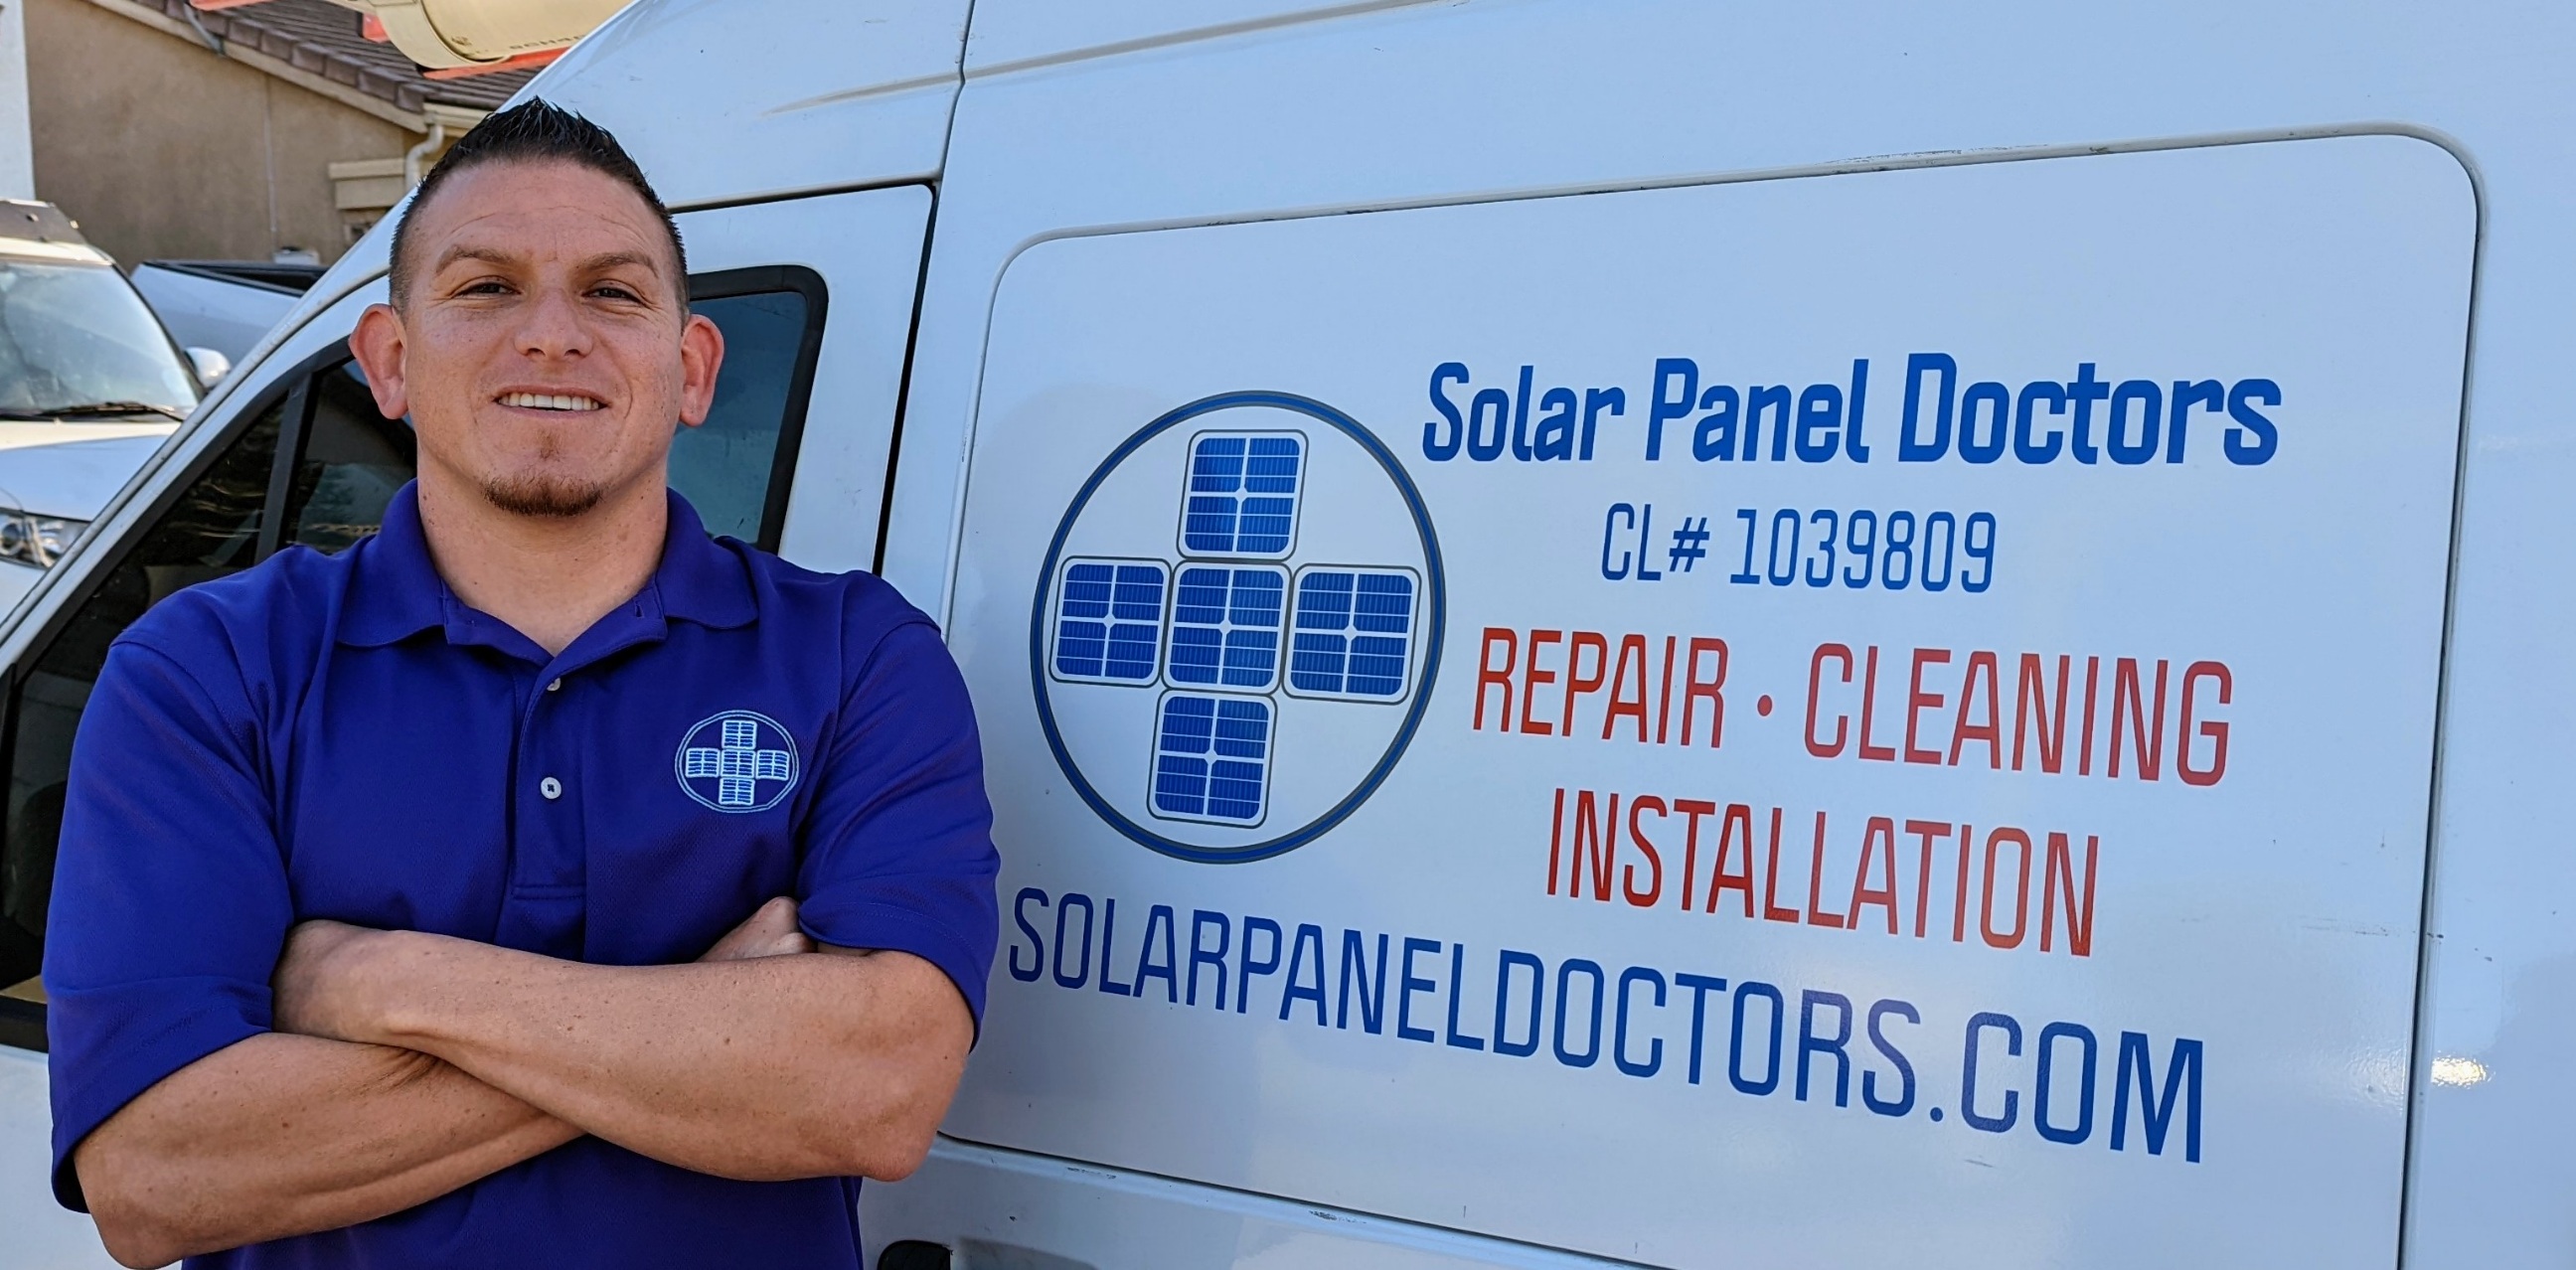 Nicholas Anderson of Solar Panel Doctors by his van